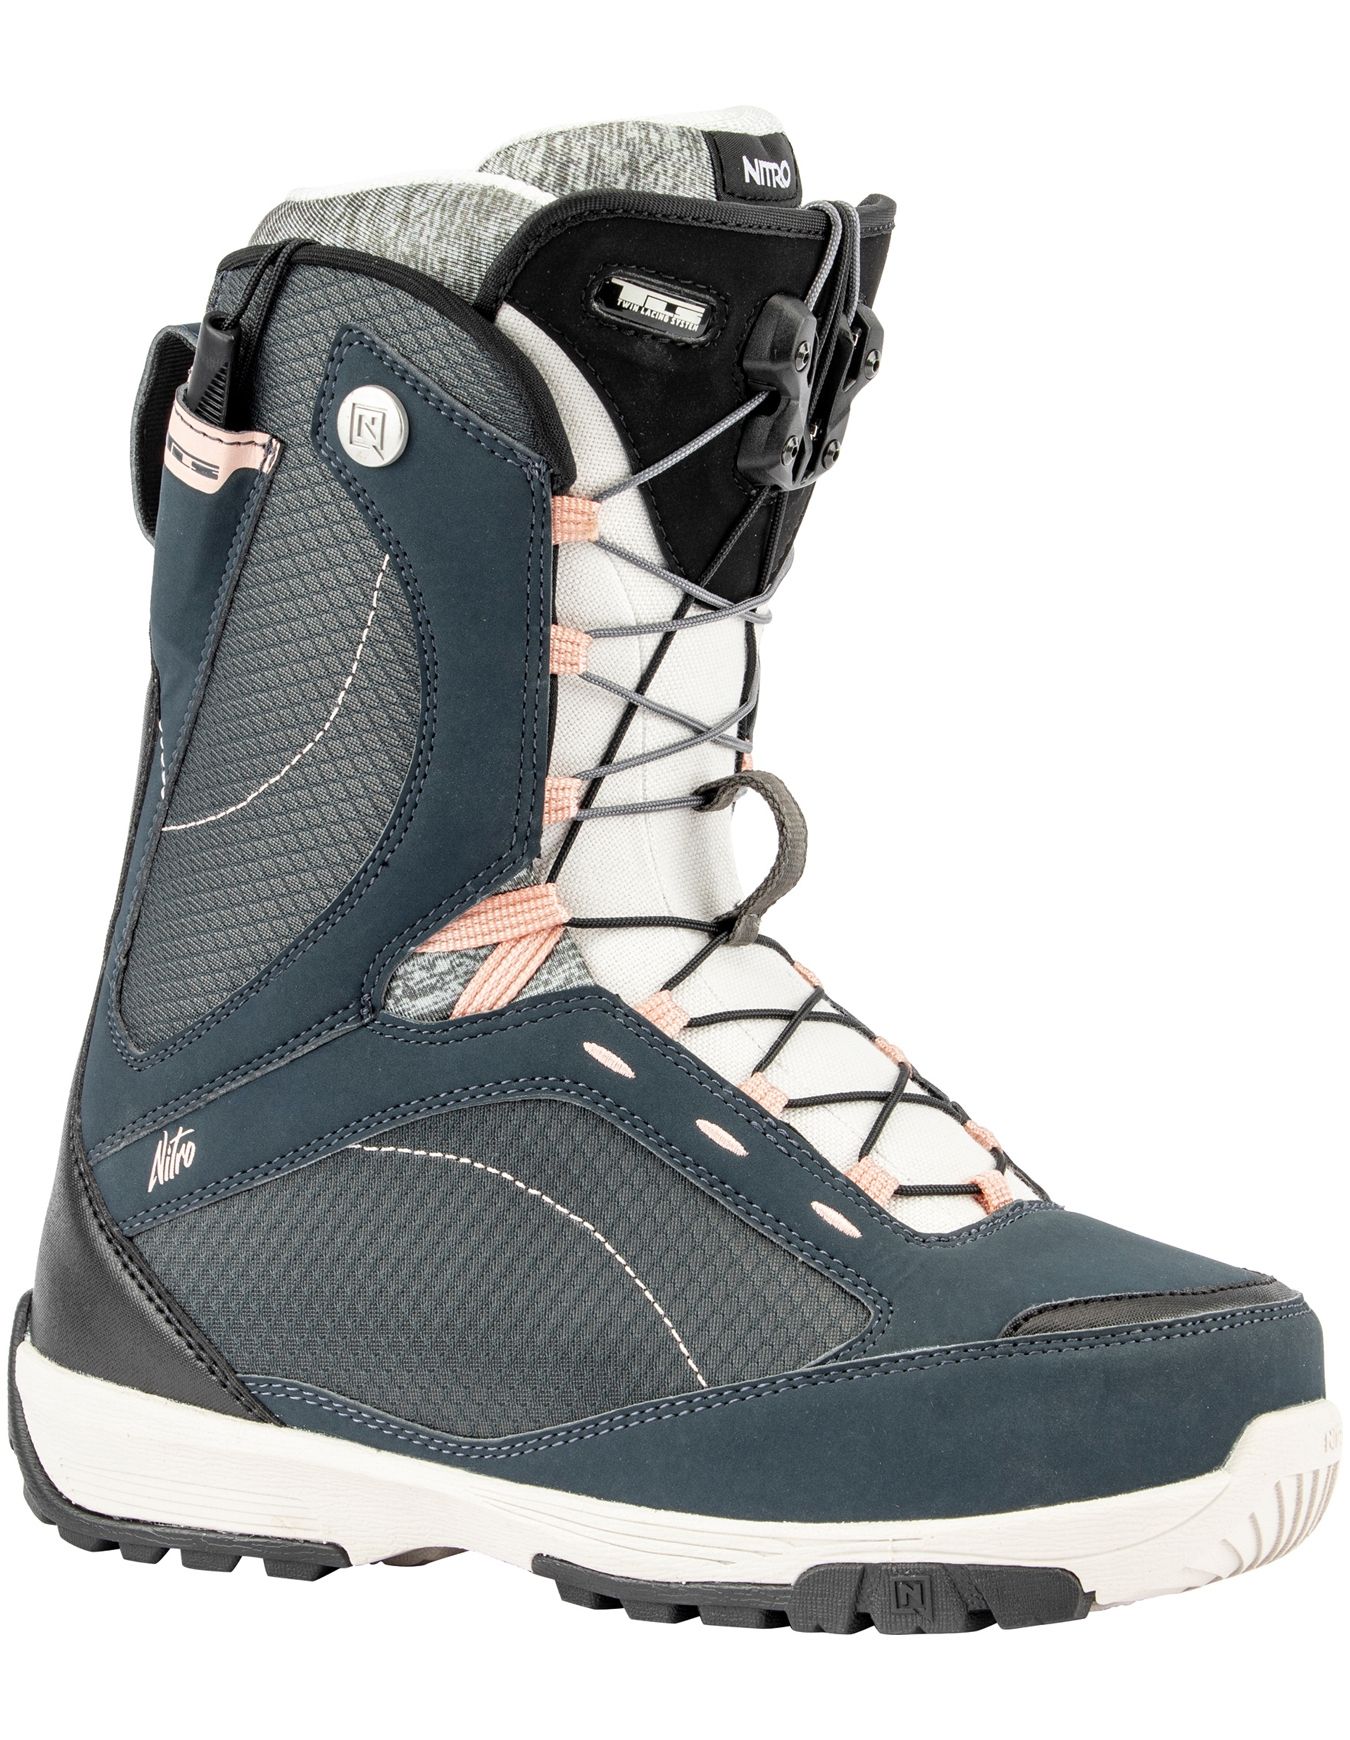 Boots de snowboard Monarch TLS